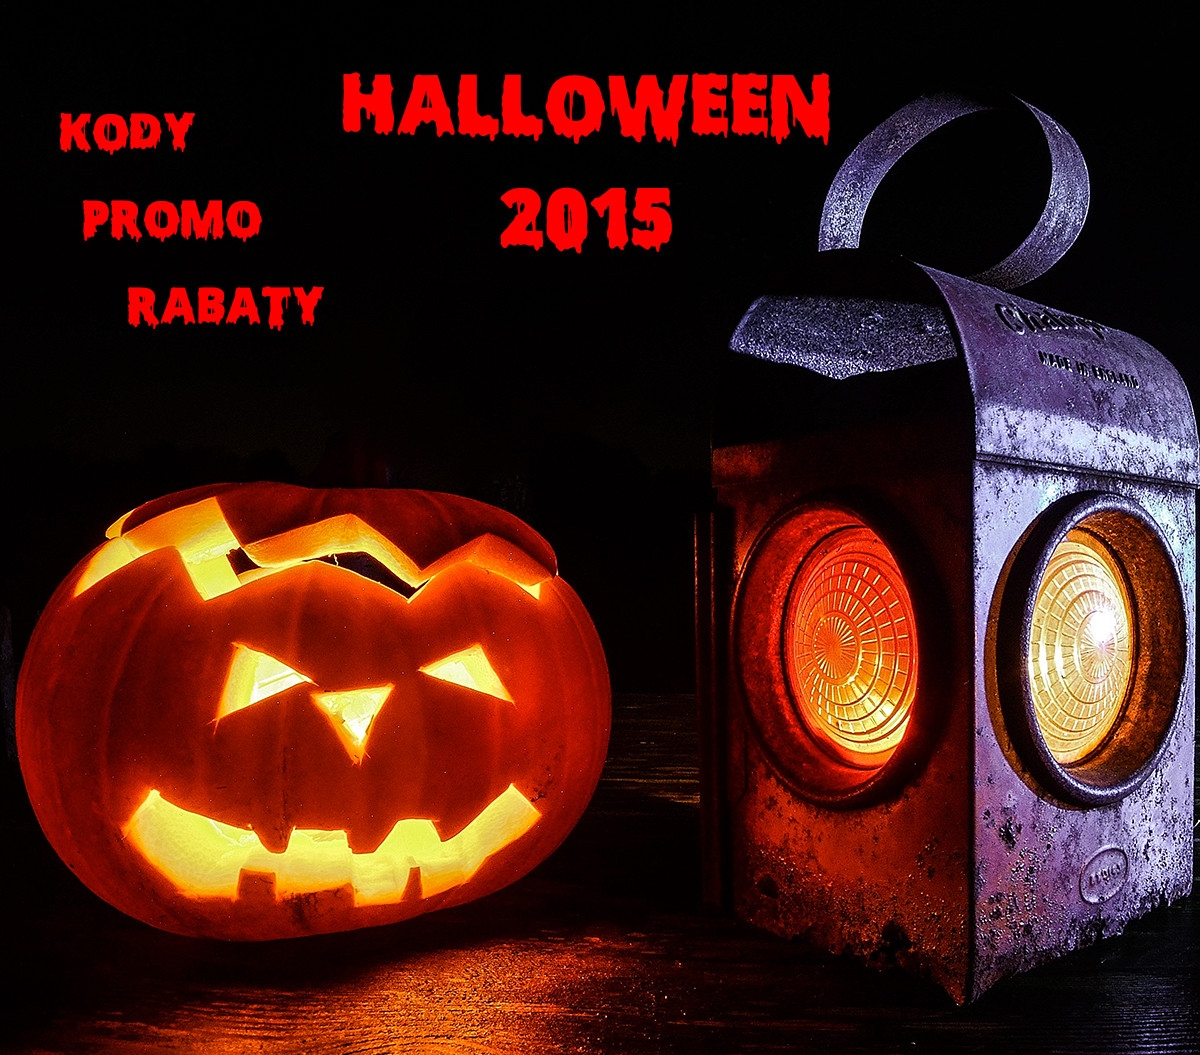 Kody Promo Rabaty Halloween 2015